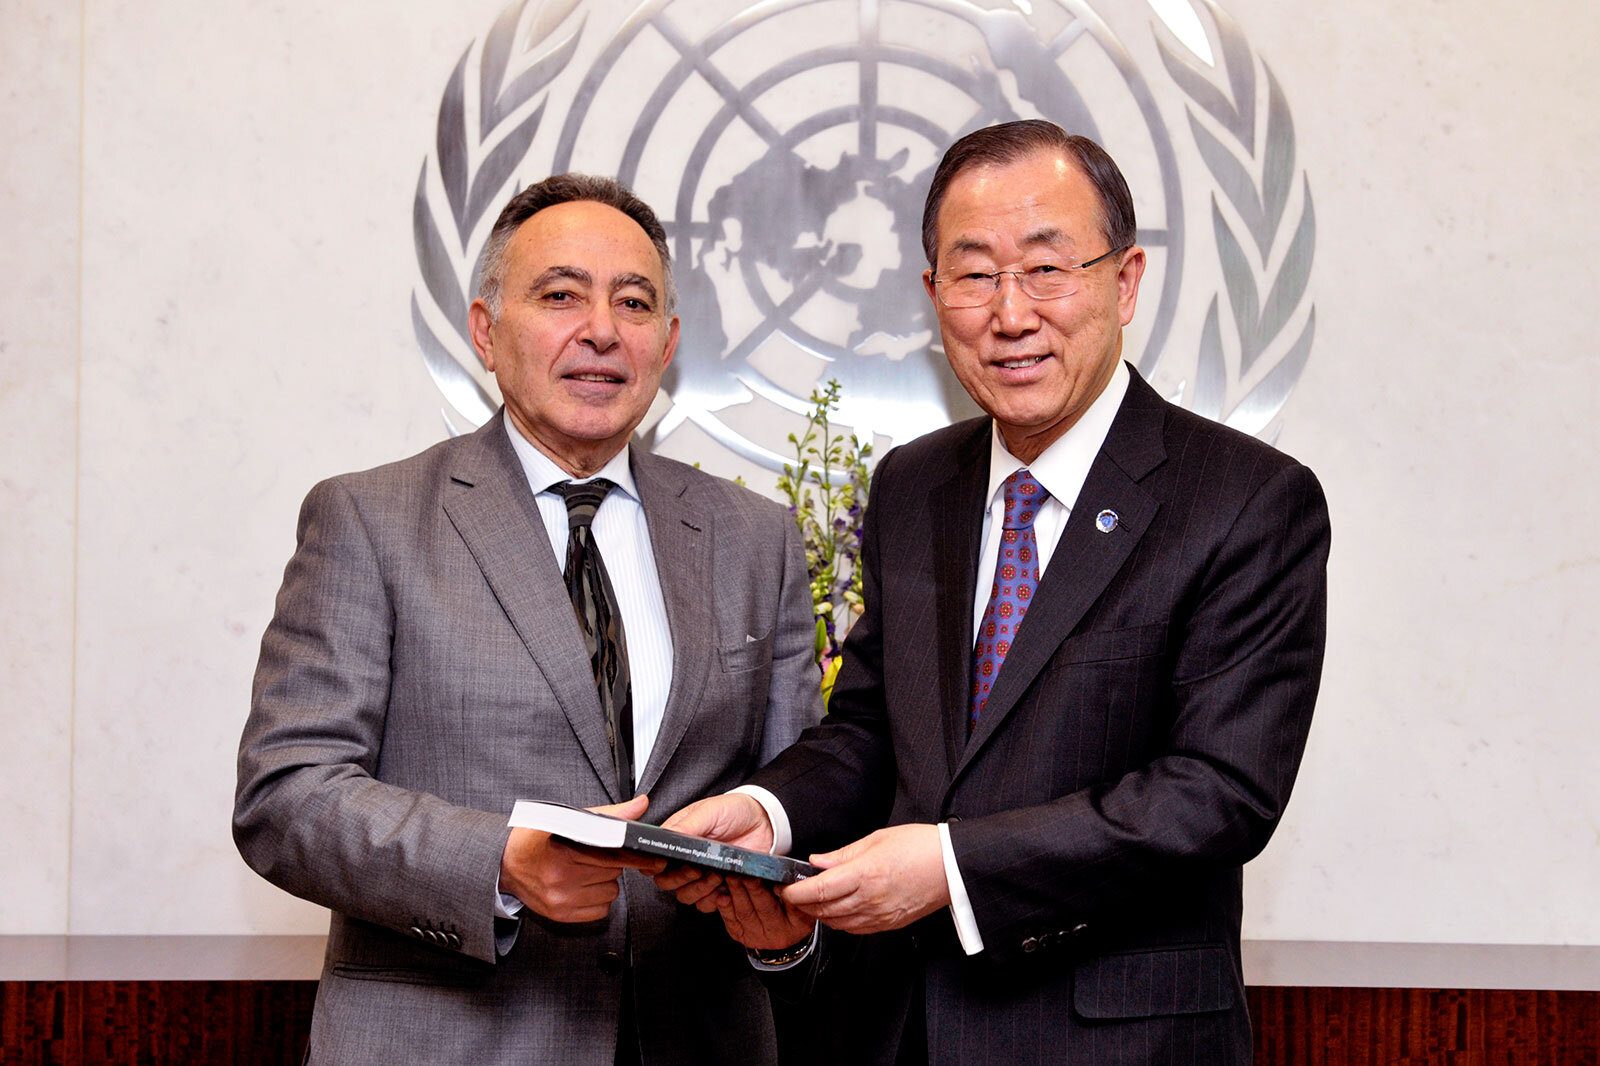 El activista egipcio de los derechos humanos Bahey eldin Hassan, fotografiado aquí con el antiguo Secretario General de las Naciones Unidas, Ban Ki-Moon (Foto: Mark Garten)